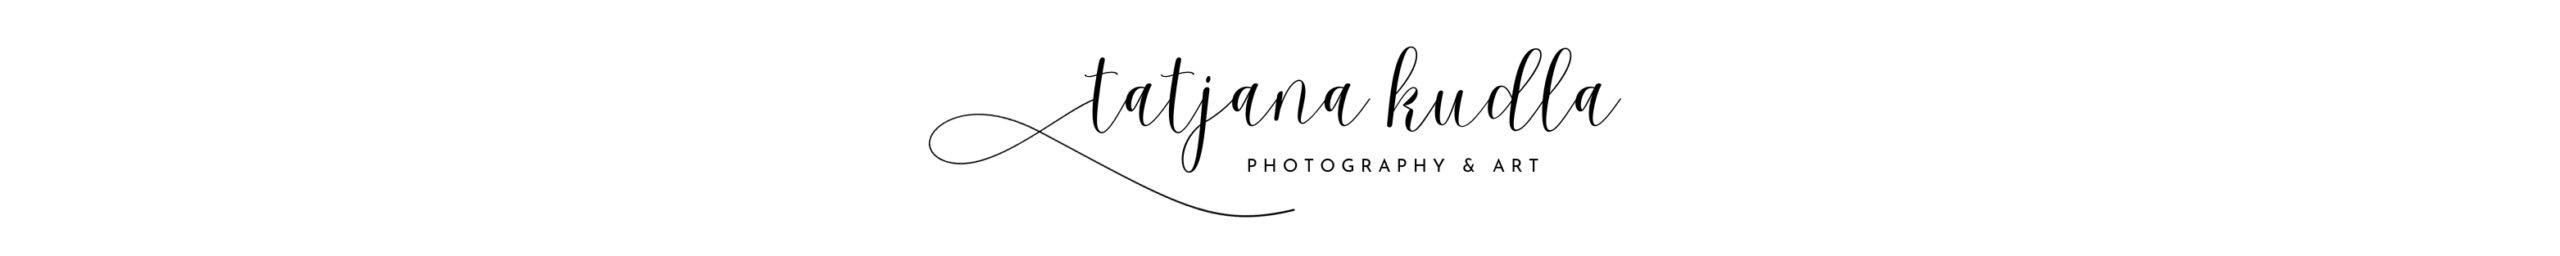 tatjana kudla photography & art